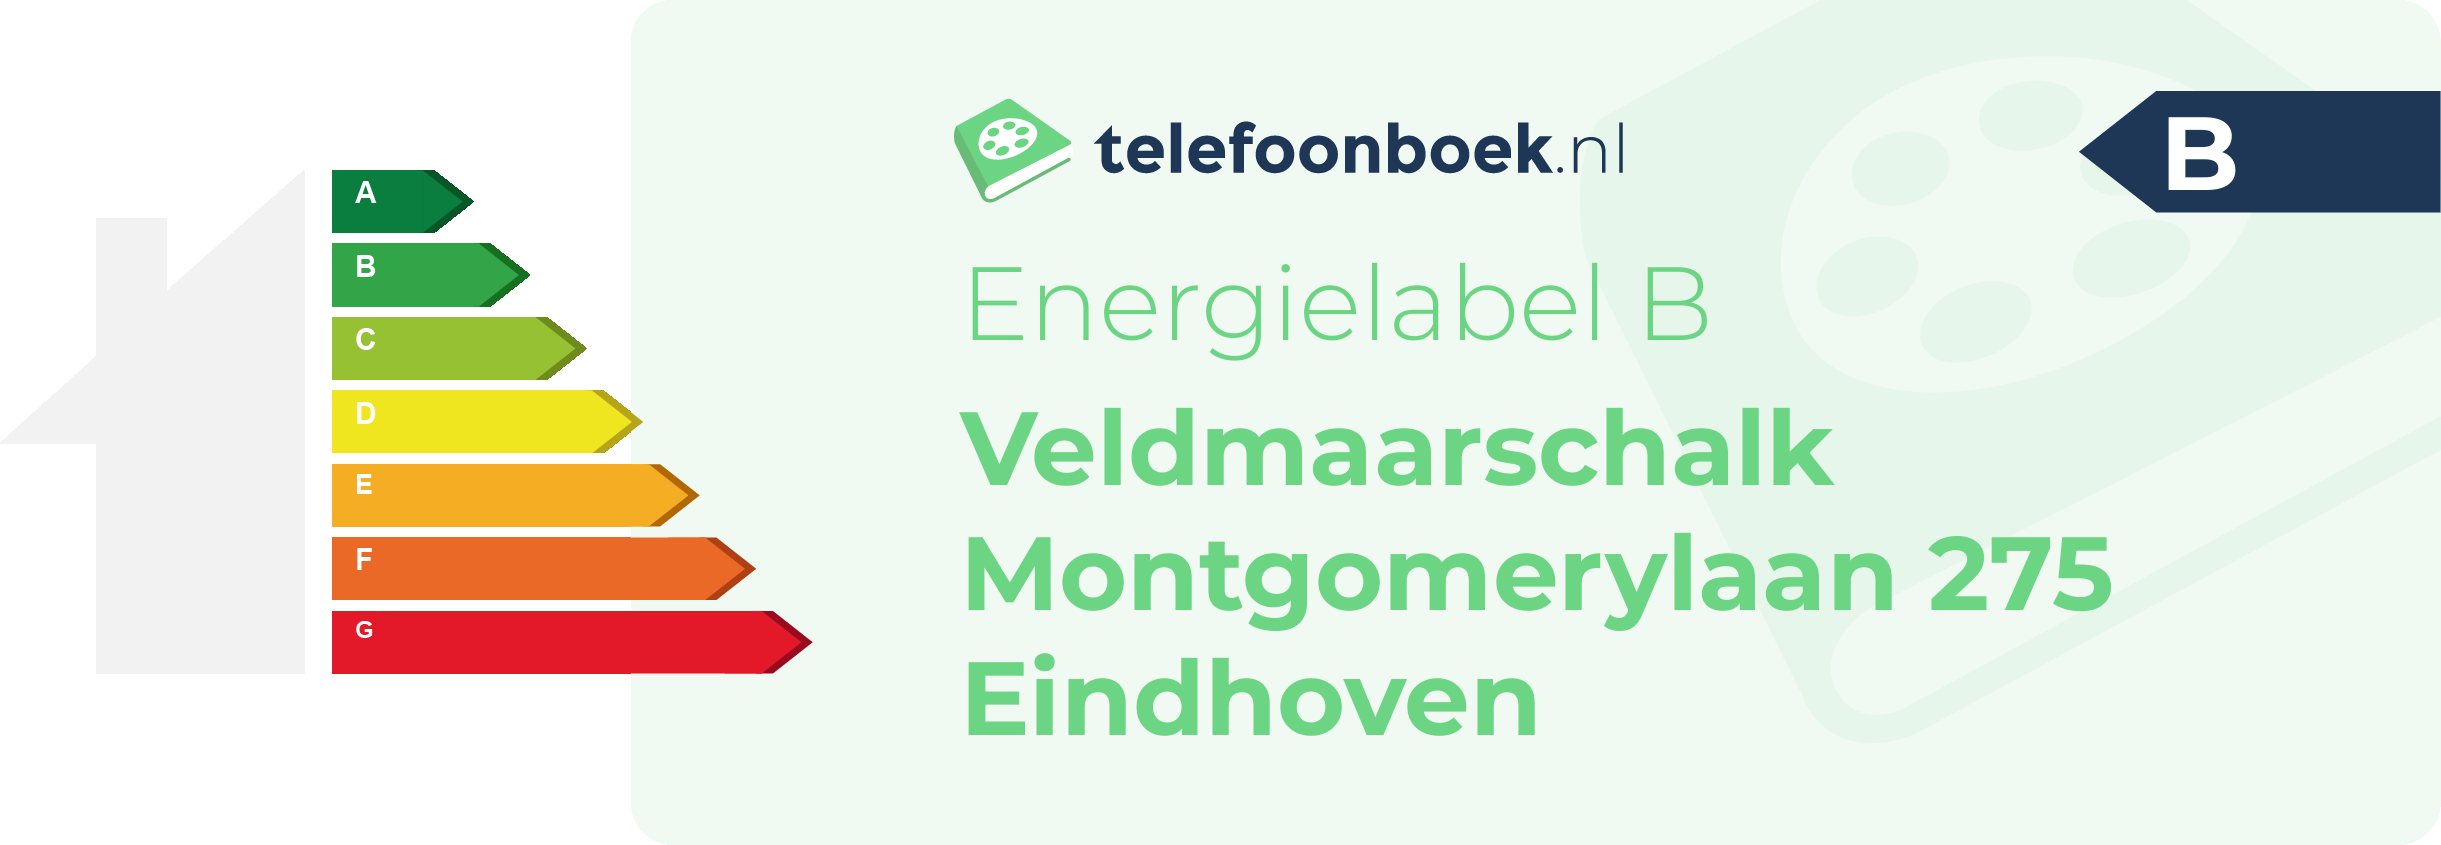 Energielabel Veldmaarschalk Montgomerylaan 275 Eindhoven